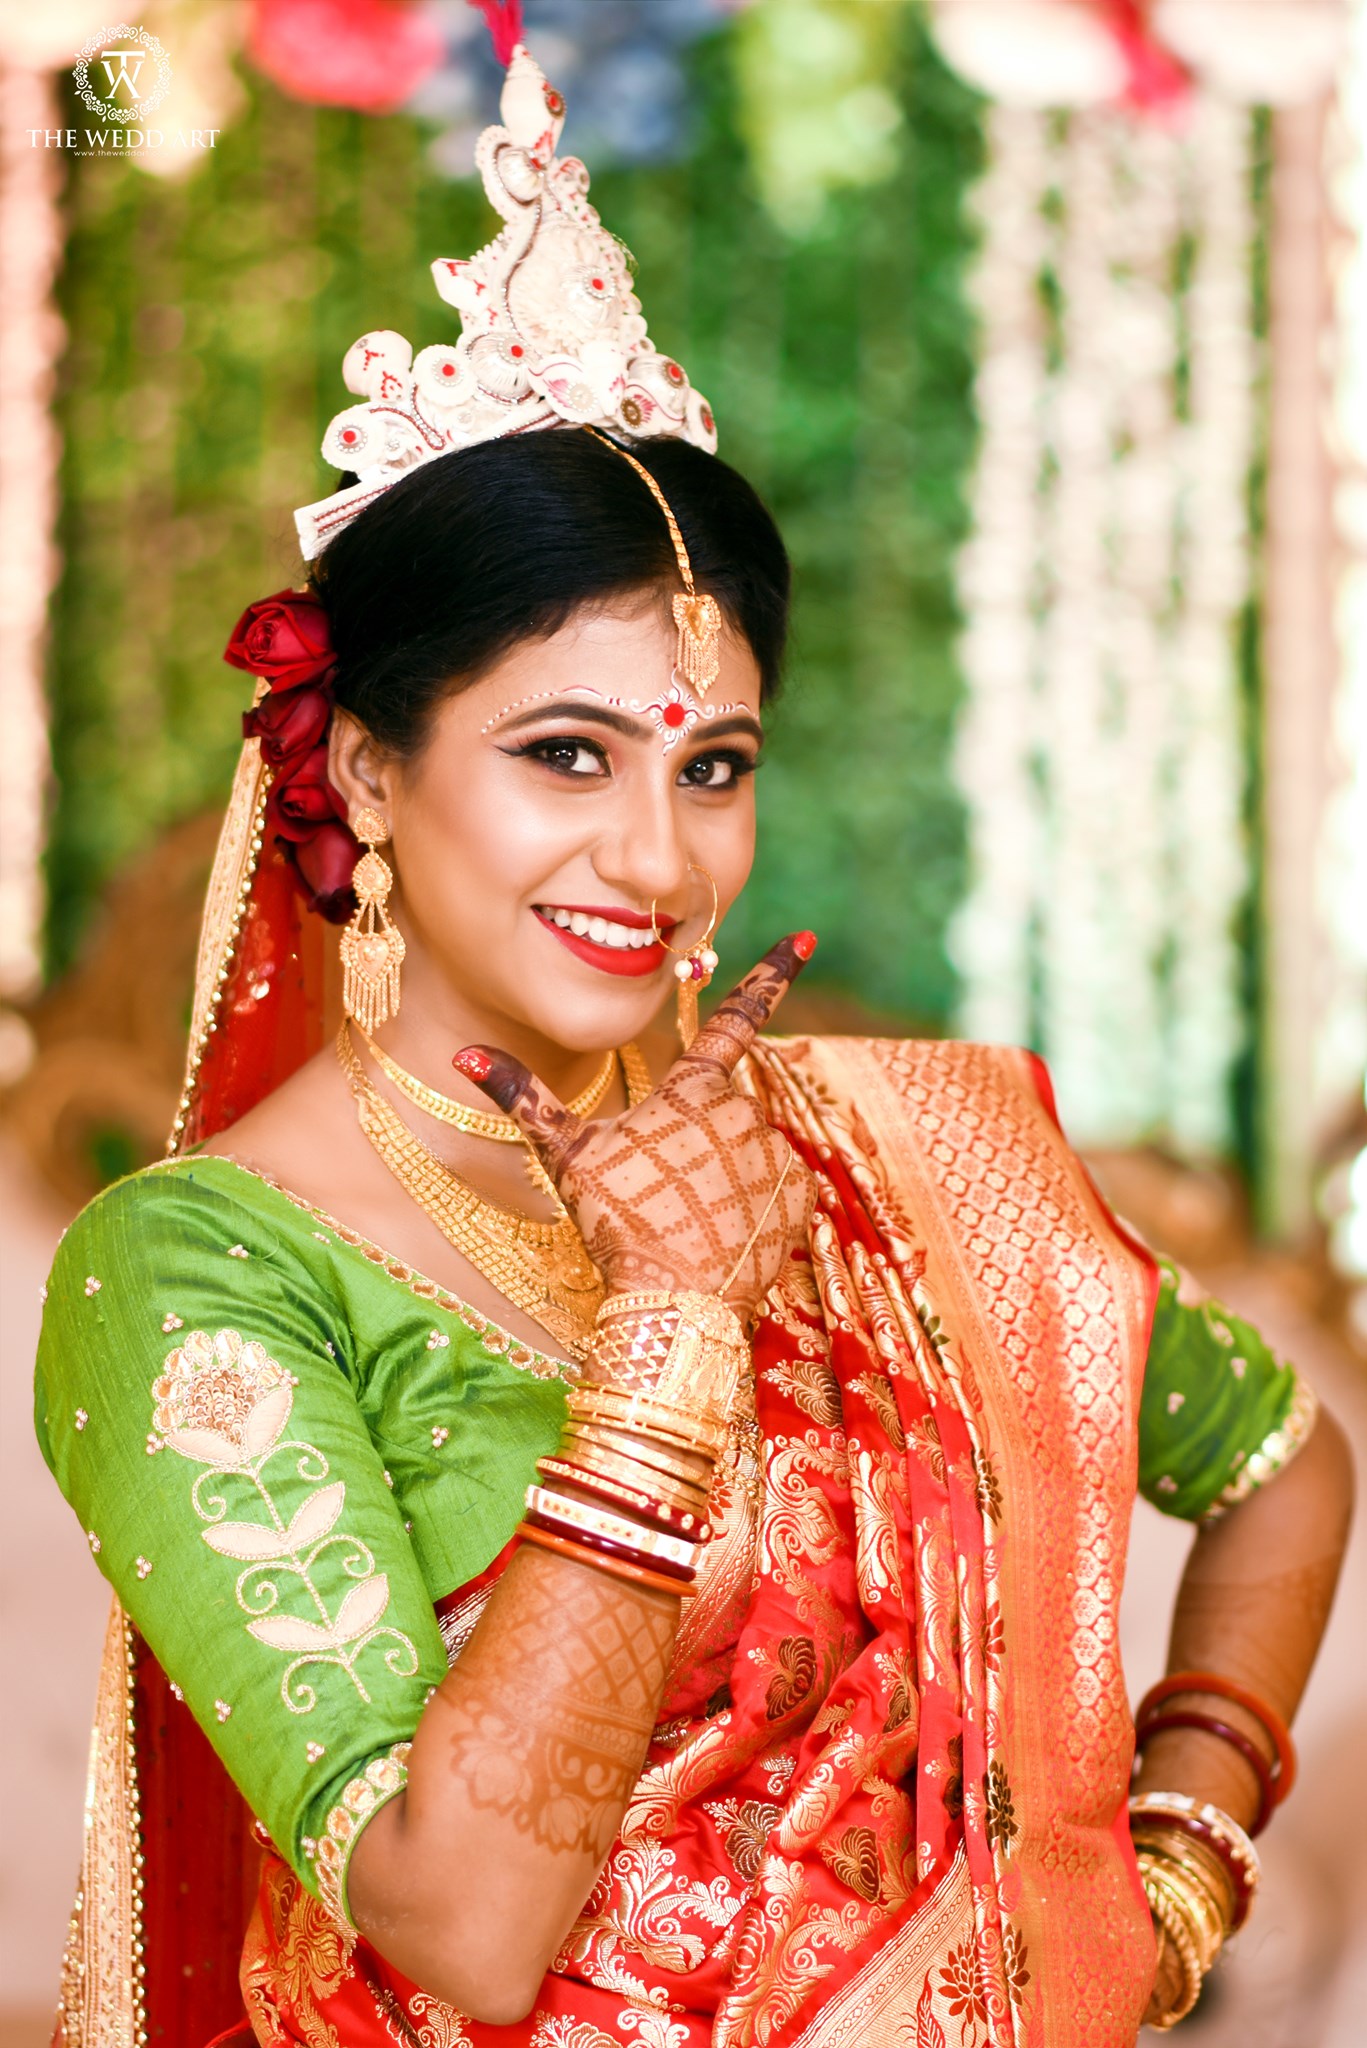 Beautiful Woman in Sari Looking Sideways · Free Stock Photo